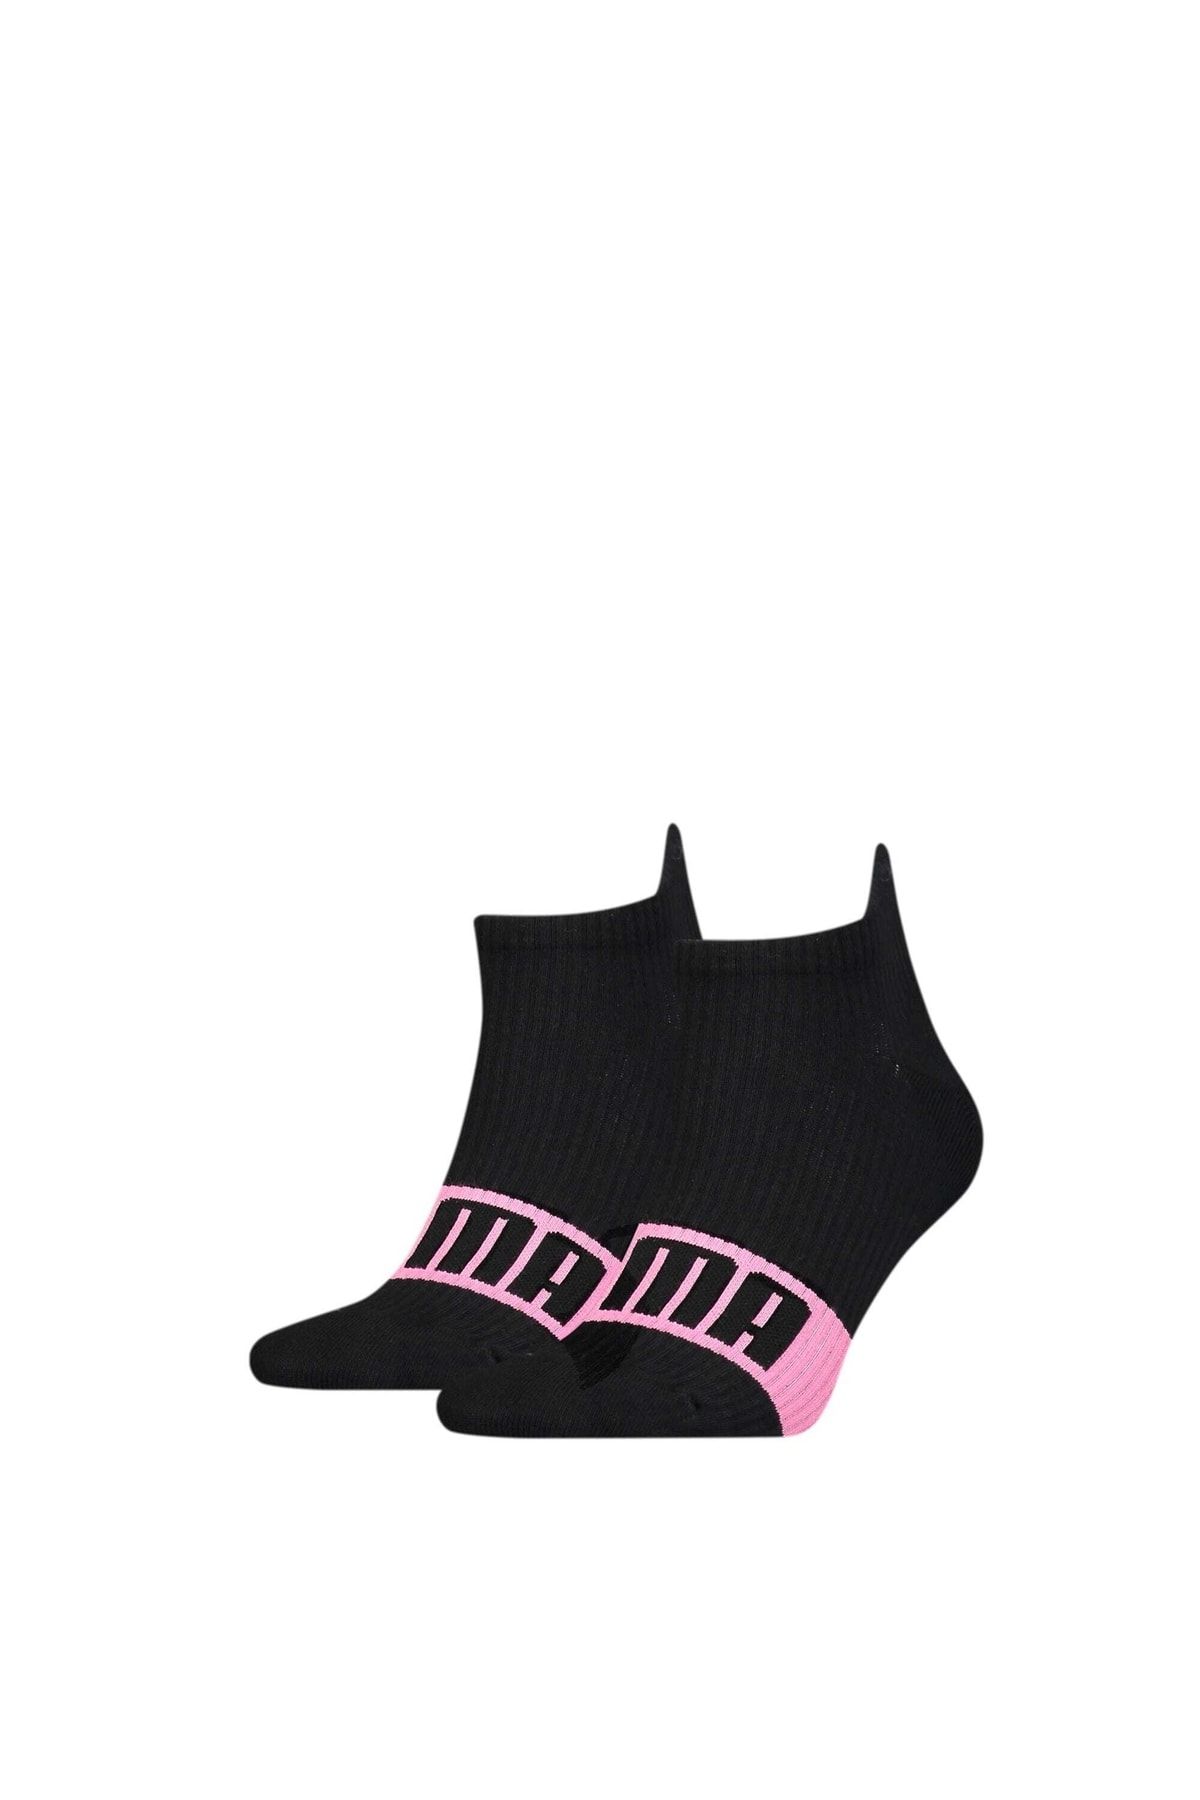 Puma Kadın Logo Çorap